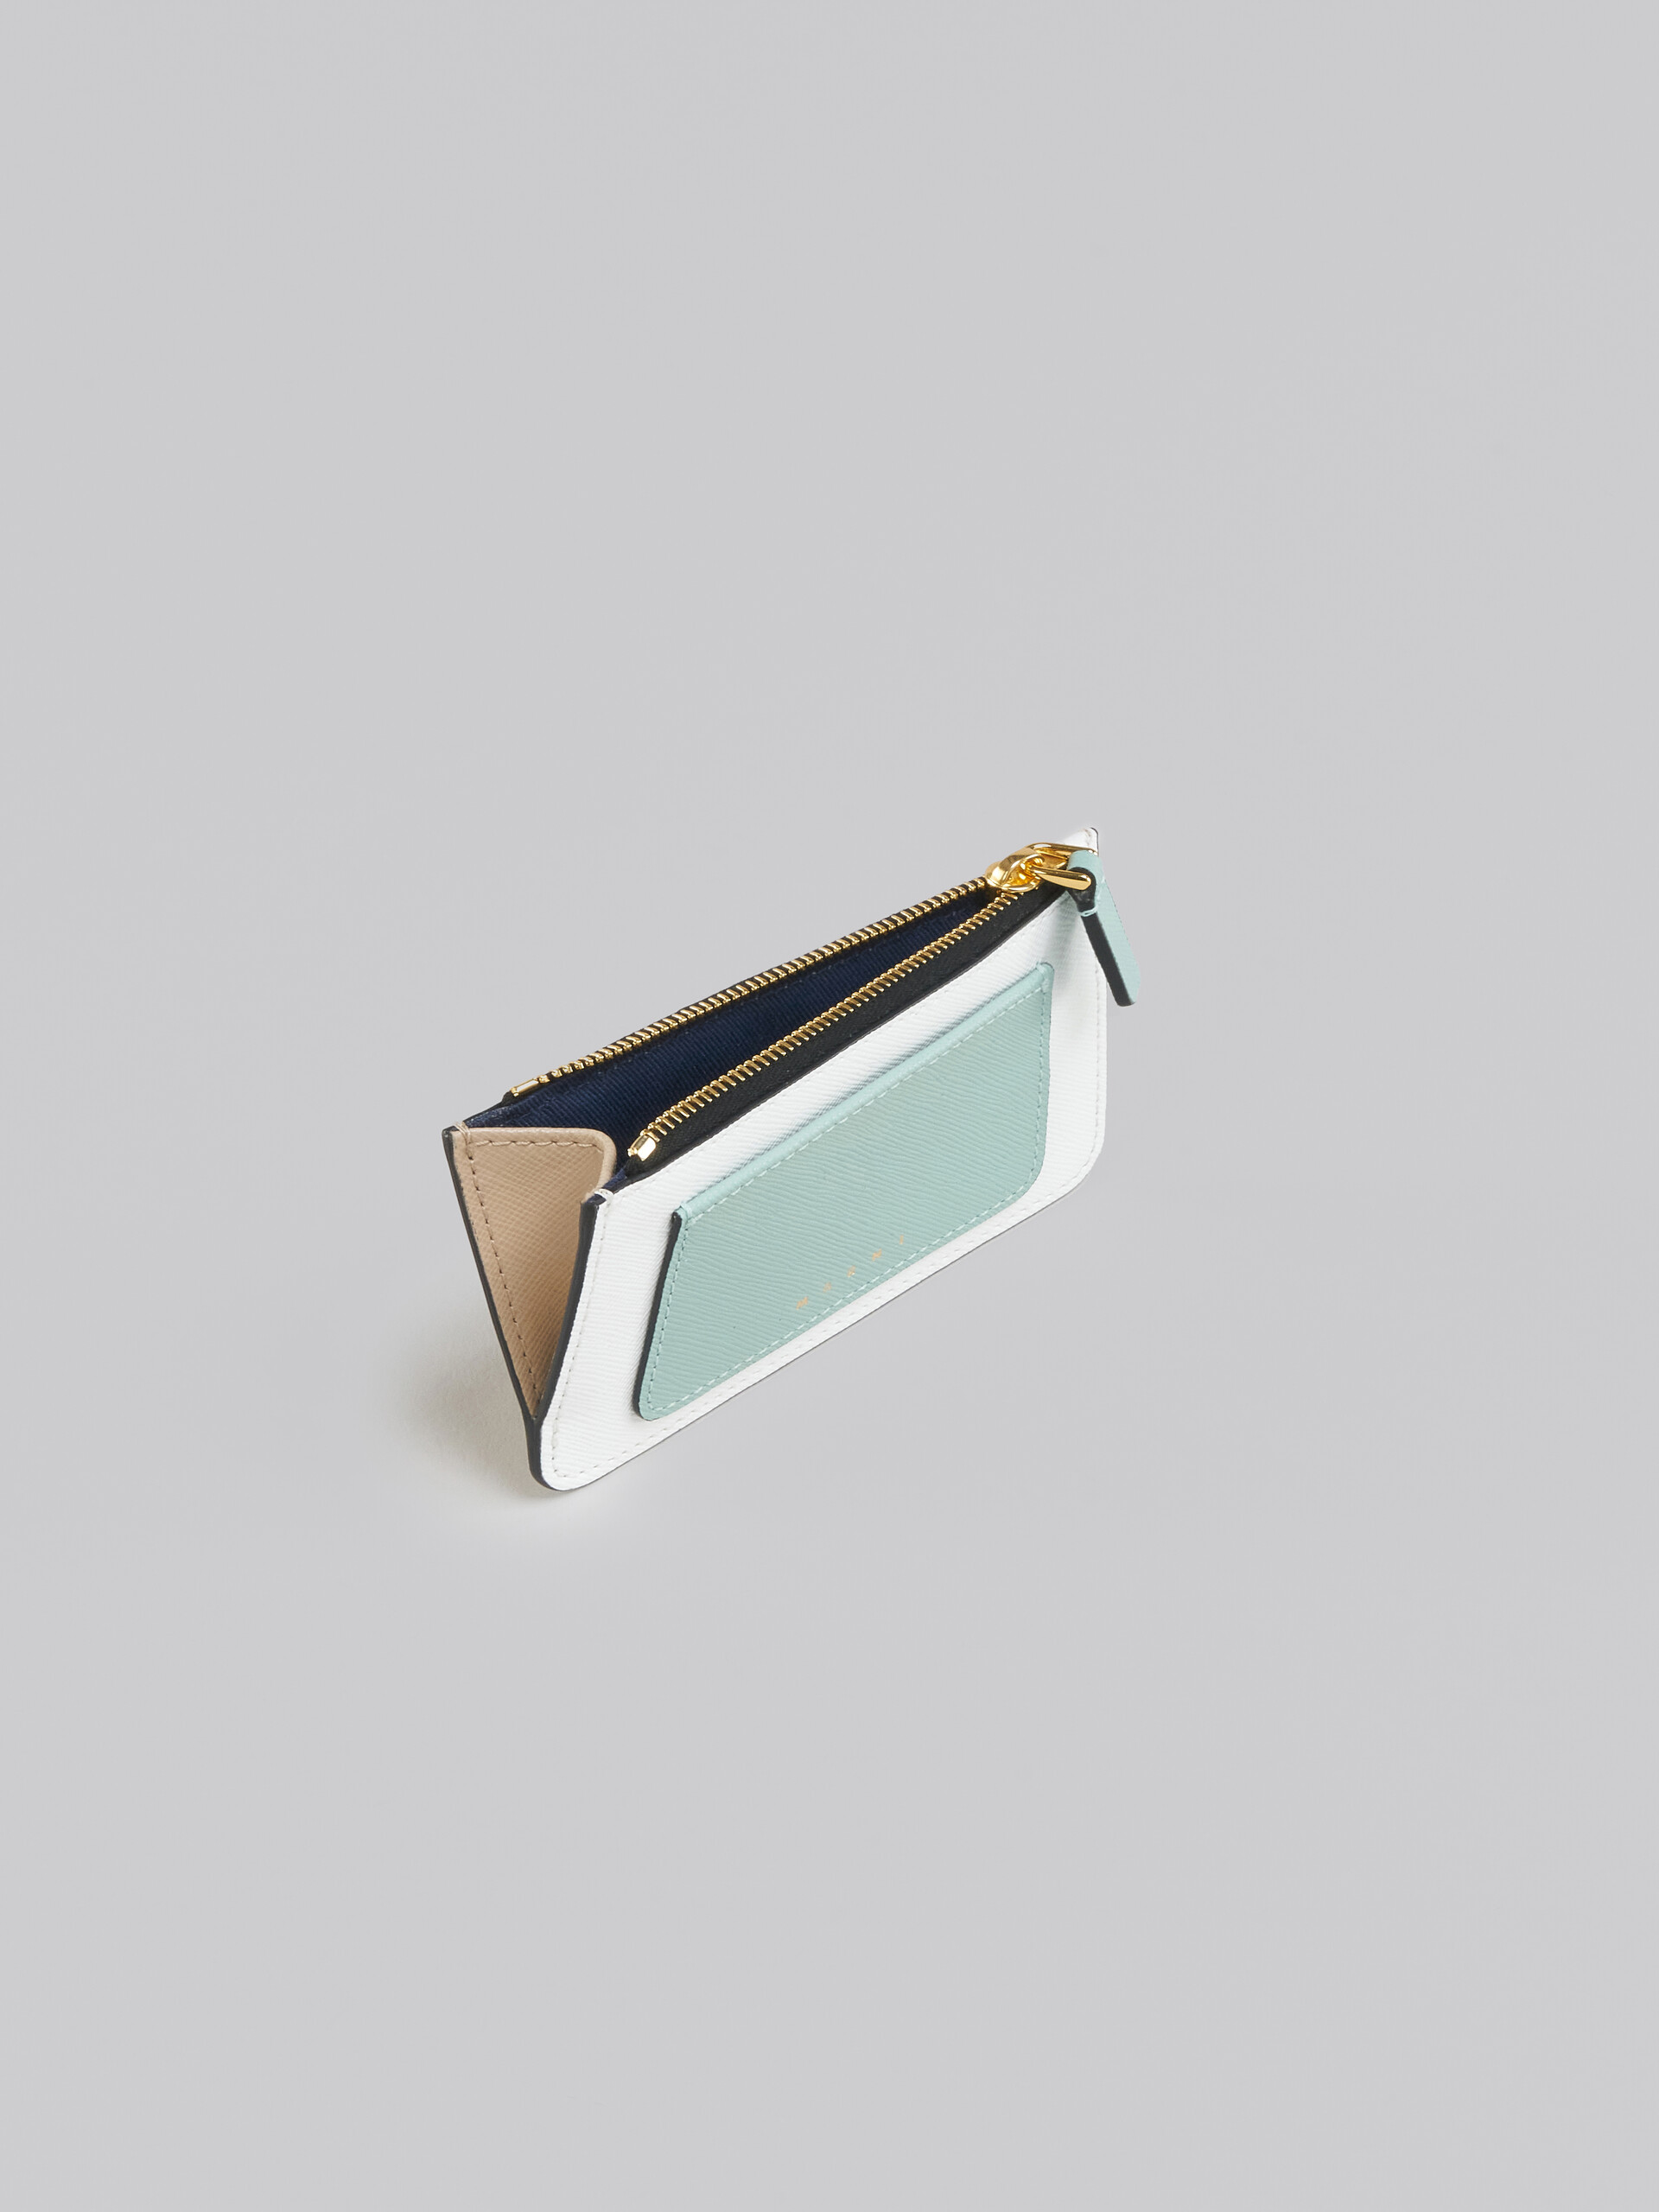 Porte-cartes en cuir saffiano vert clair, blanc et marron - Portefeuilles - Image 2